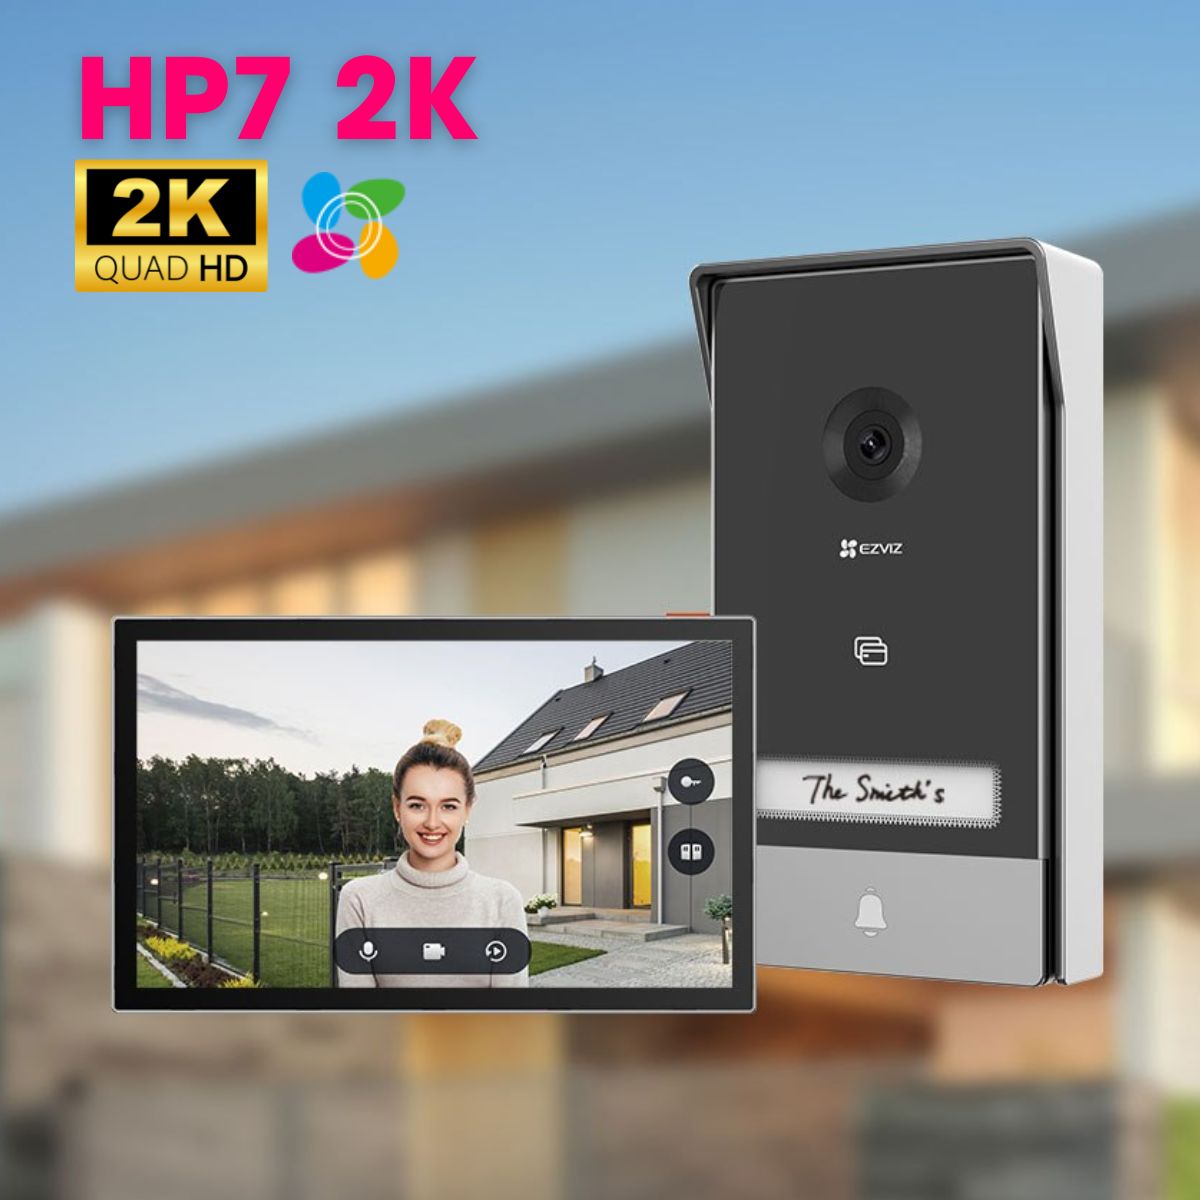 Chuông cửa màn hình Ezviz HP7 2K màn hình màu 7inch, phát hiện chuyển động, đàm thoại 2 chiều